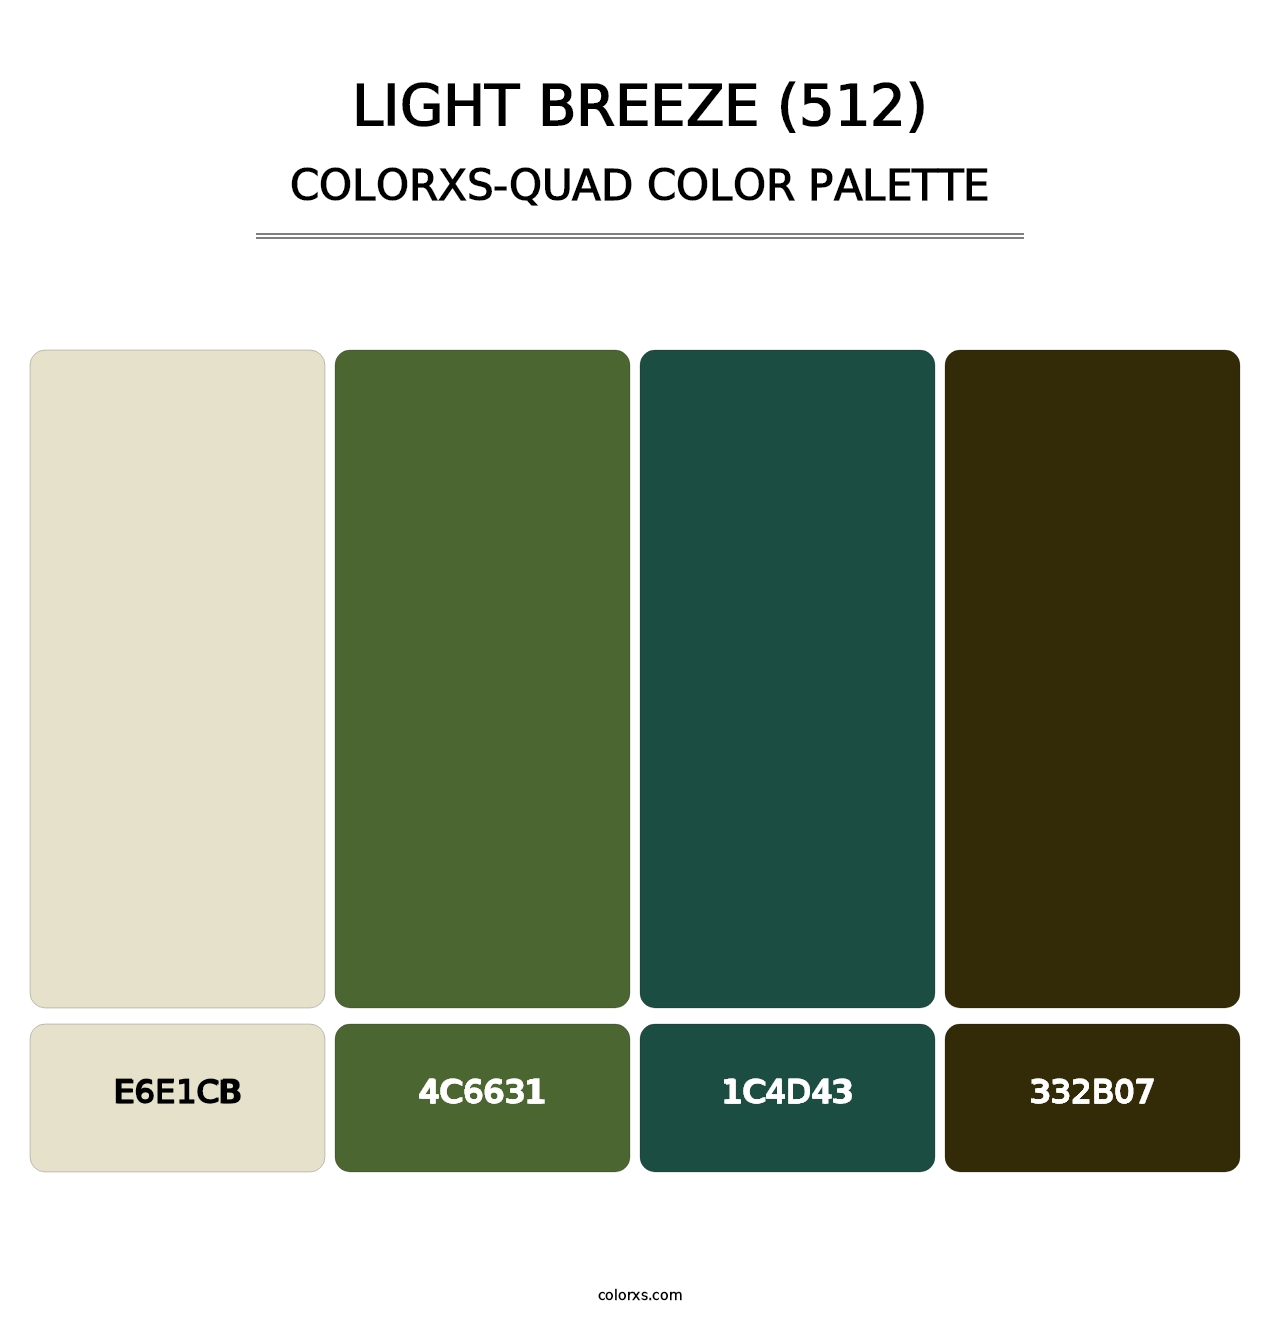 Light Breeze (512) - Colorxs Quad Palette